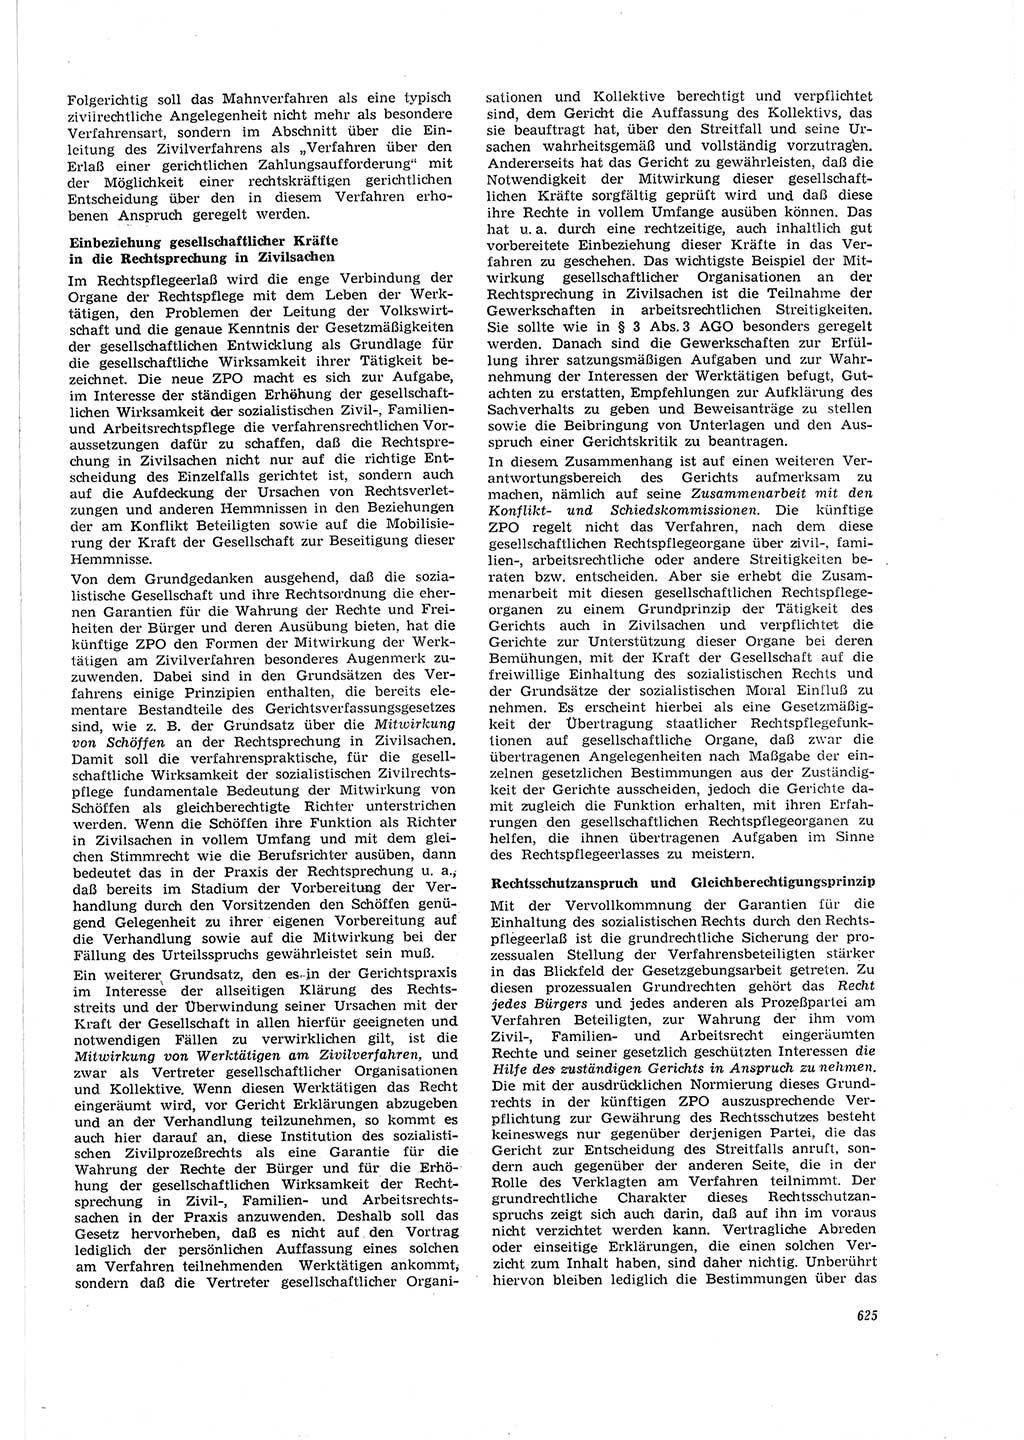 Neue Justiz (NJ), Zeitschrift für Recht und Rechtswissenschaft [Deutsche Demokratische Republik (DDR)], 20. Jahrgang 1966, Seite 625 (NJ DDR 1966, S. 625)